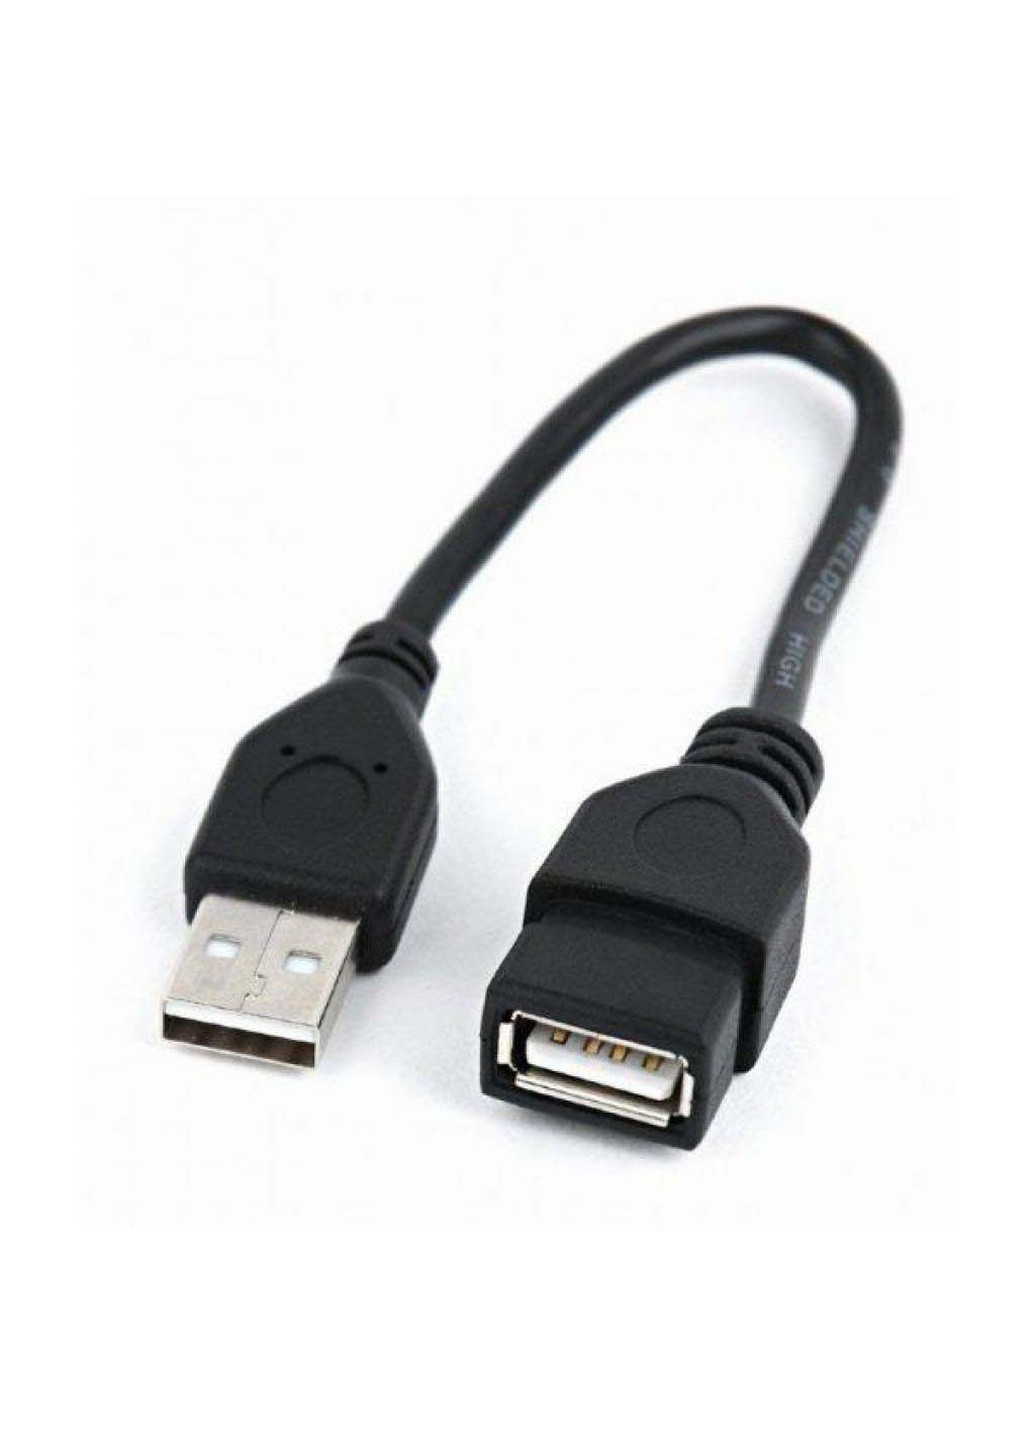 Дата кабель USB 2.0 AM / AF 0.15m (CCP-USB2-AMAF-0.15M) Cablexpert usb 2.0 am/af 0.15m (239381422)